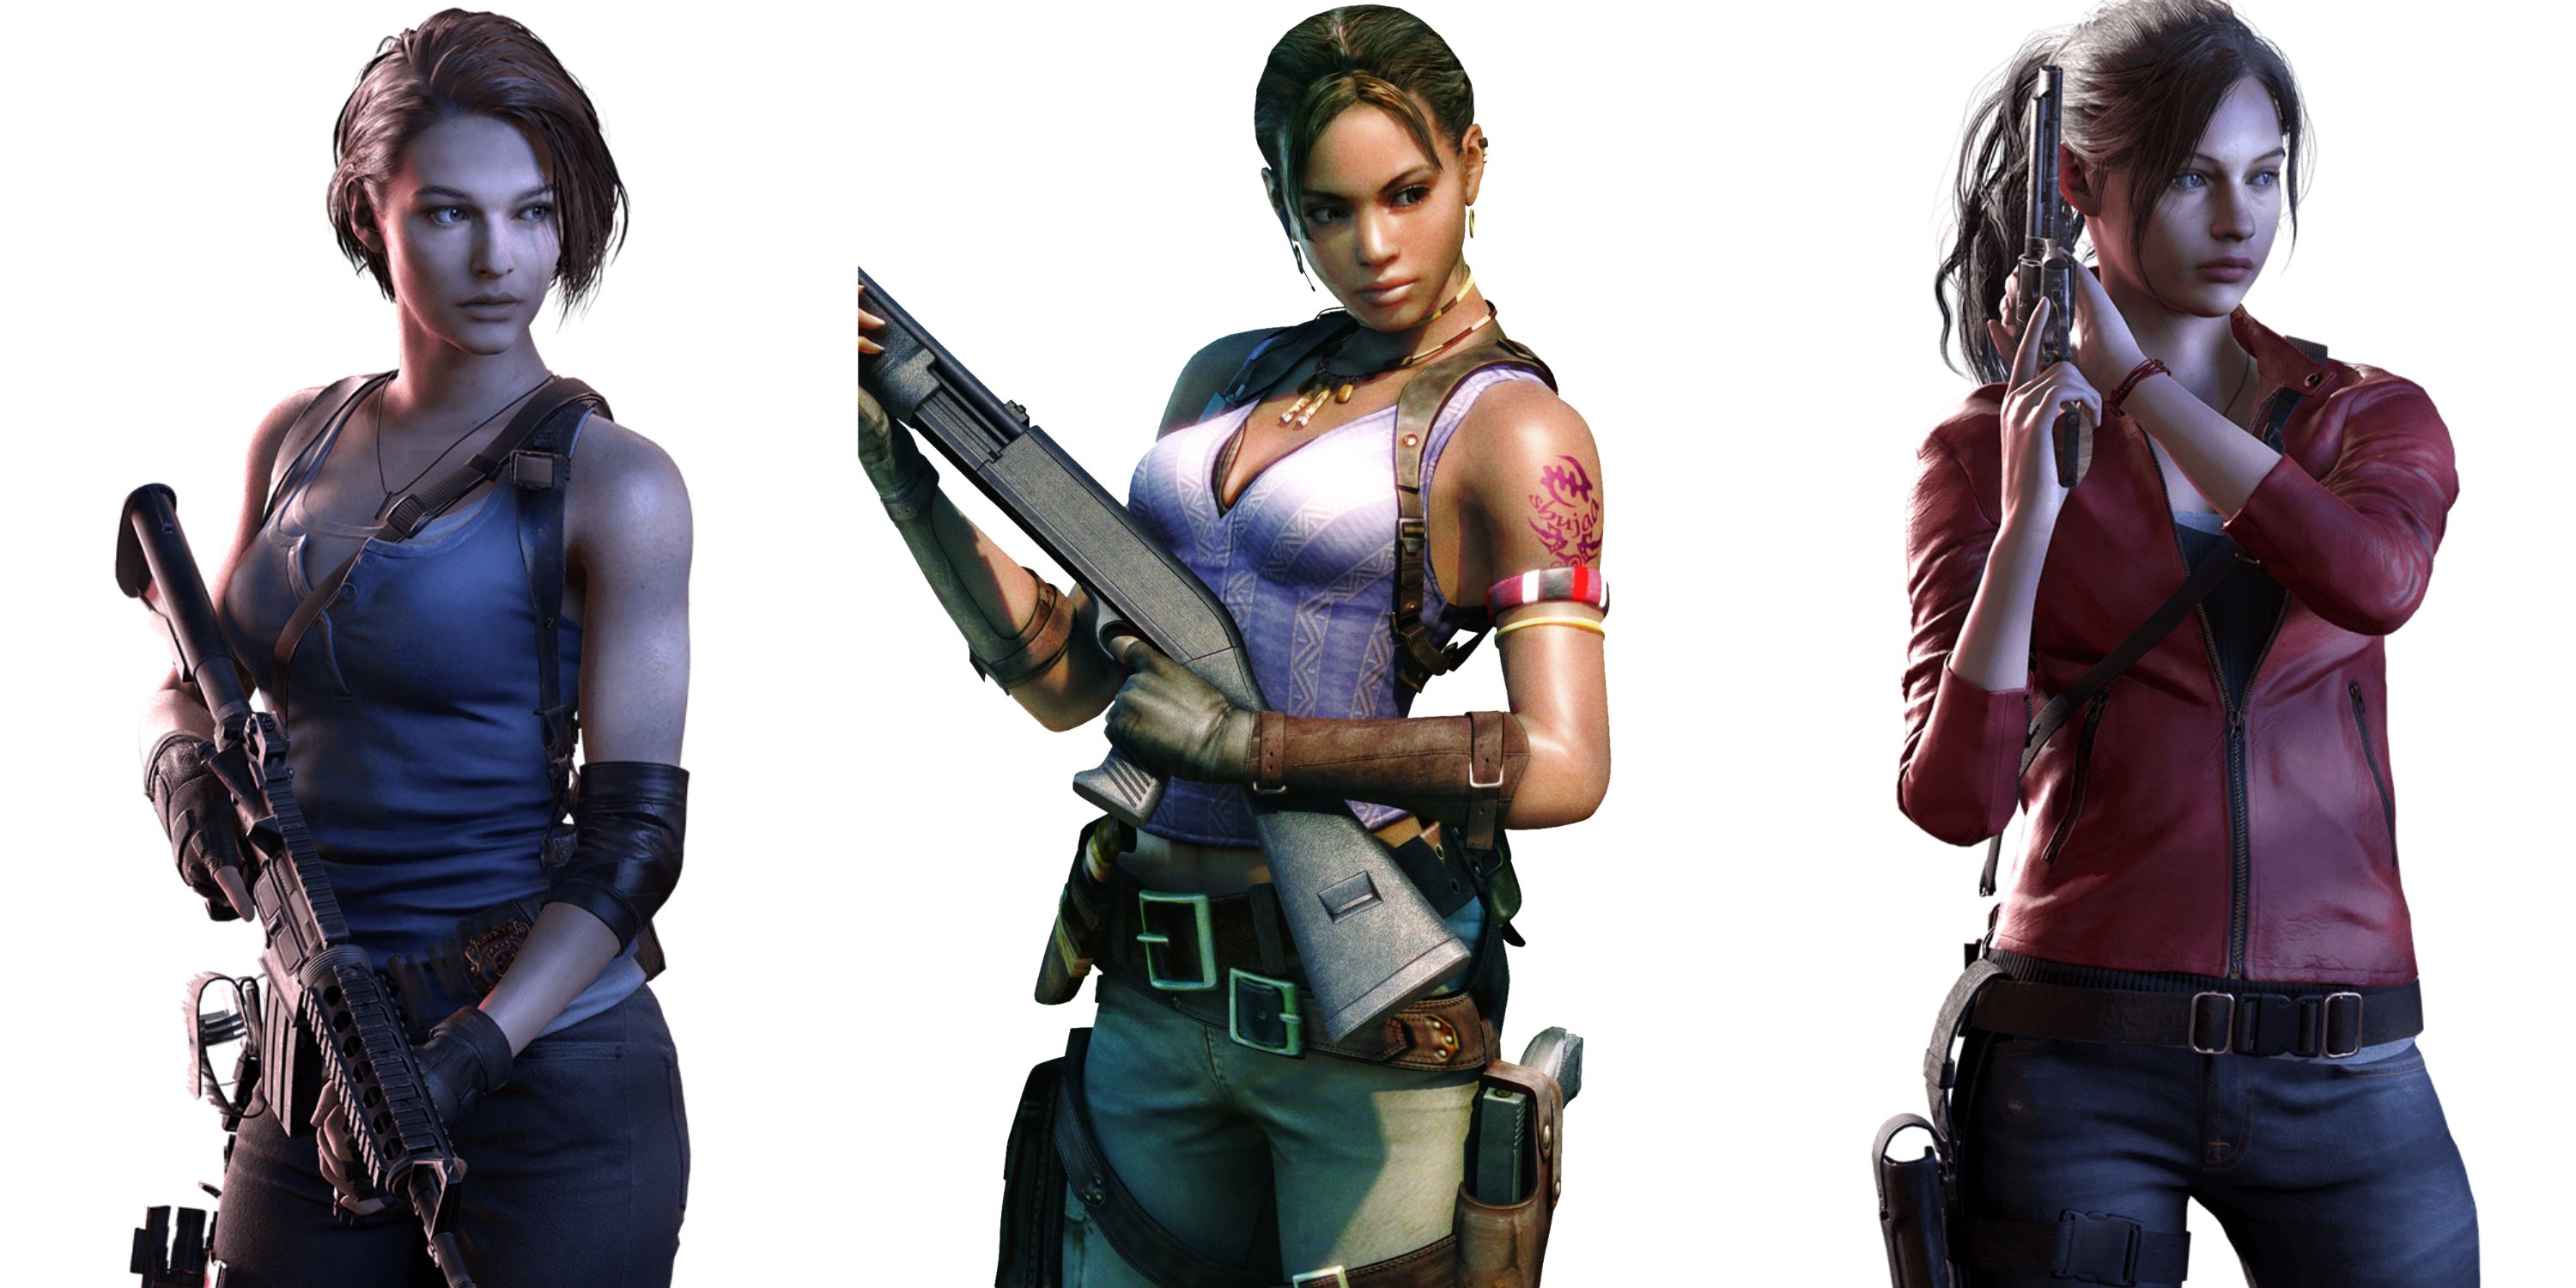 Jill Valentine from Resident Evil 3, Sheva Alomar from Resident Evil 5, and Claire Redfield from Resident Evil 2